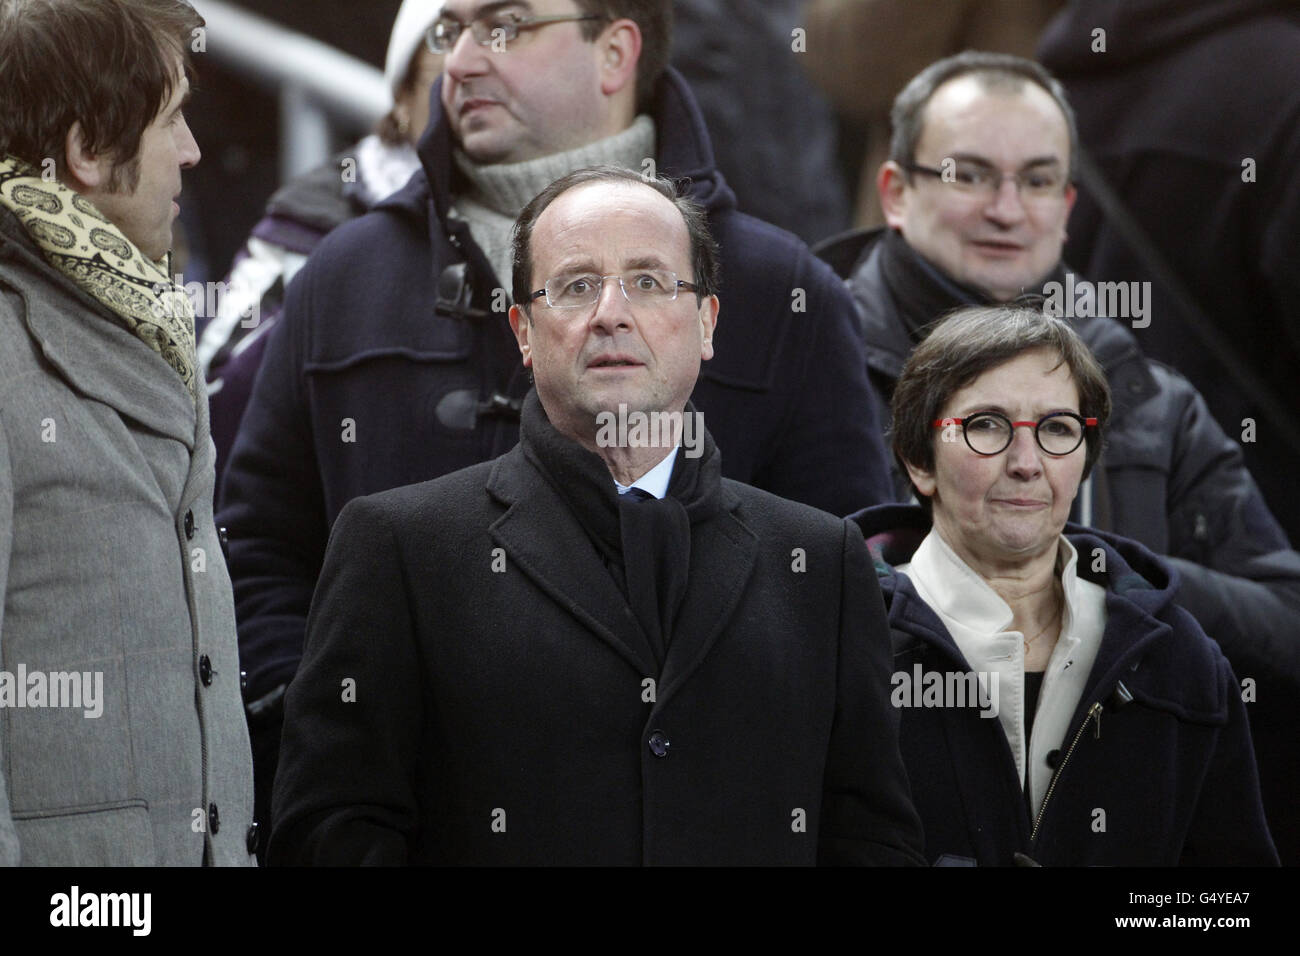 Francese socialista candidato alle elezioni presidenziali Francois Hollande alla partita sindacale di rugby delle sei Nazioni tra Francia e Irlanda allo Stade de France a Saint-Denis, vicino a Parigi. Foto Stock